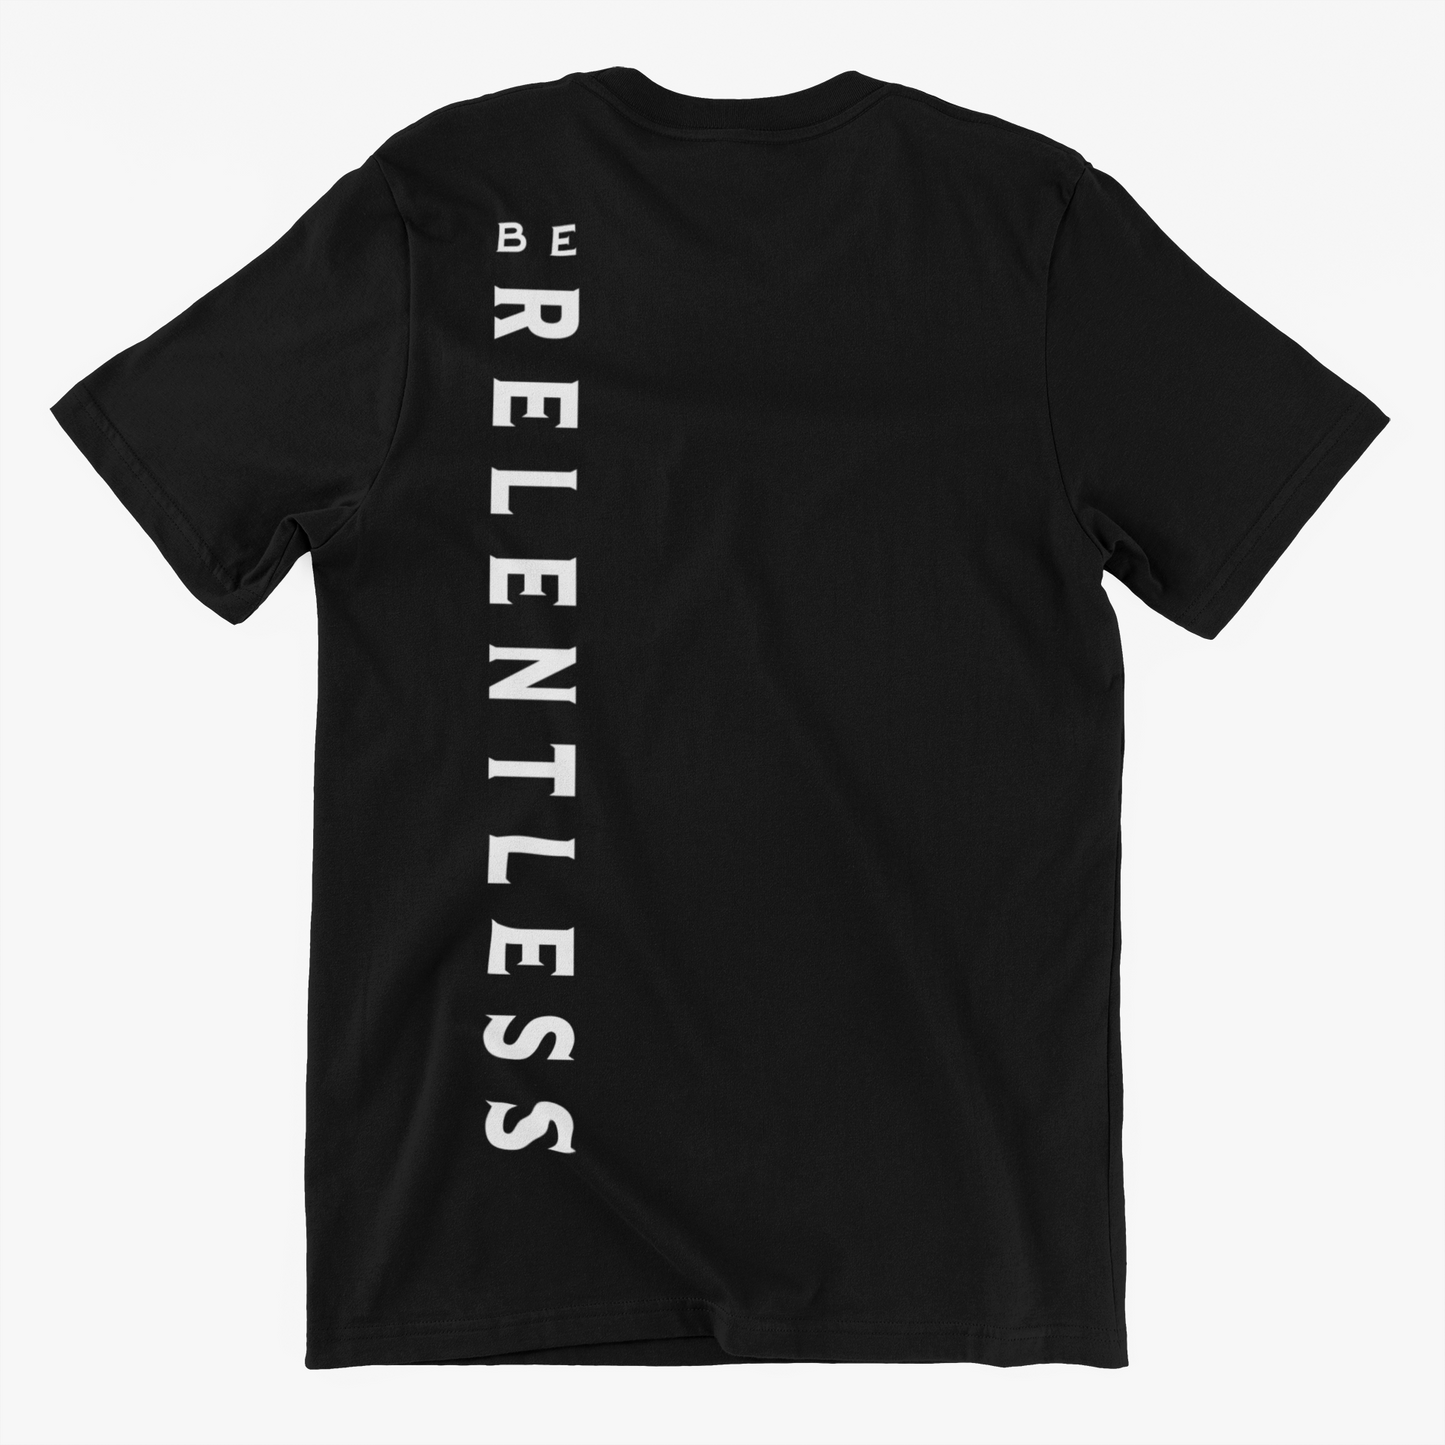 BE RELENTLESS TMF Branded T Shirt